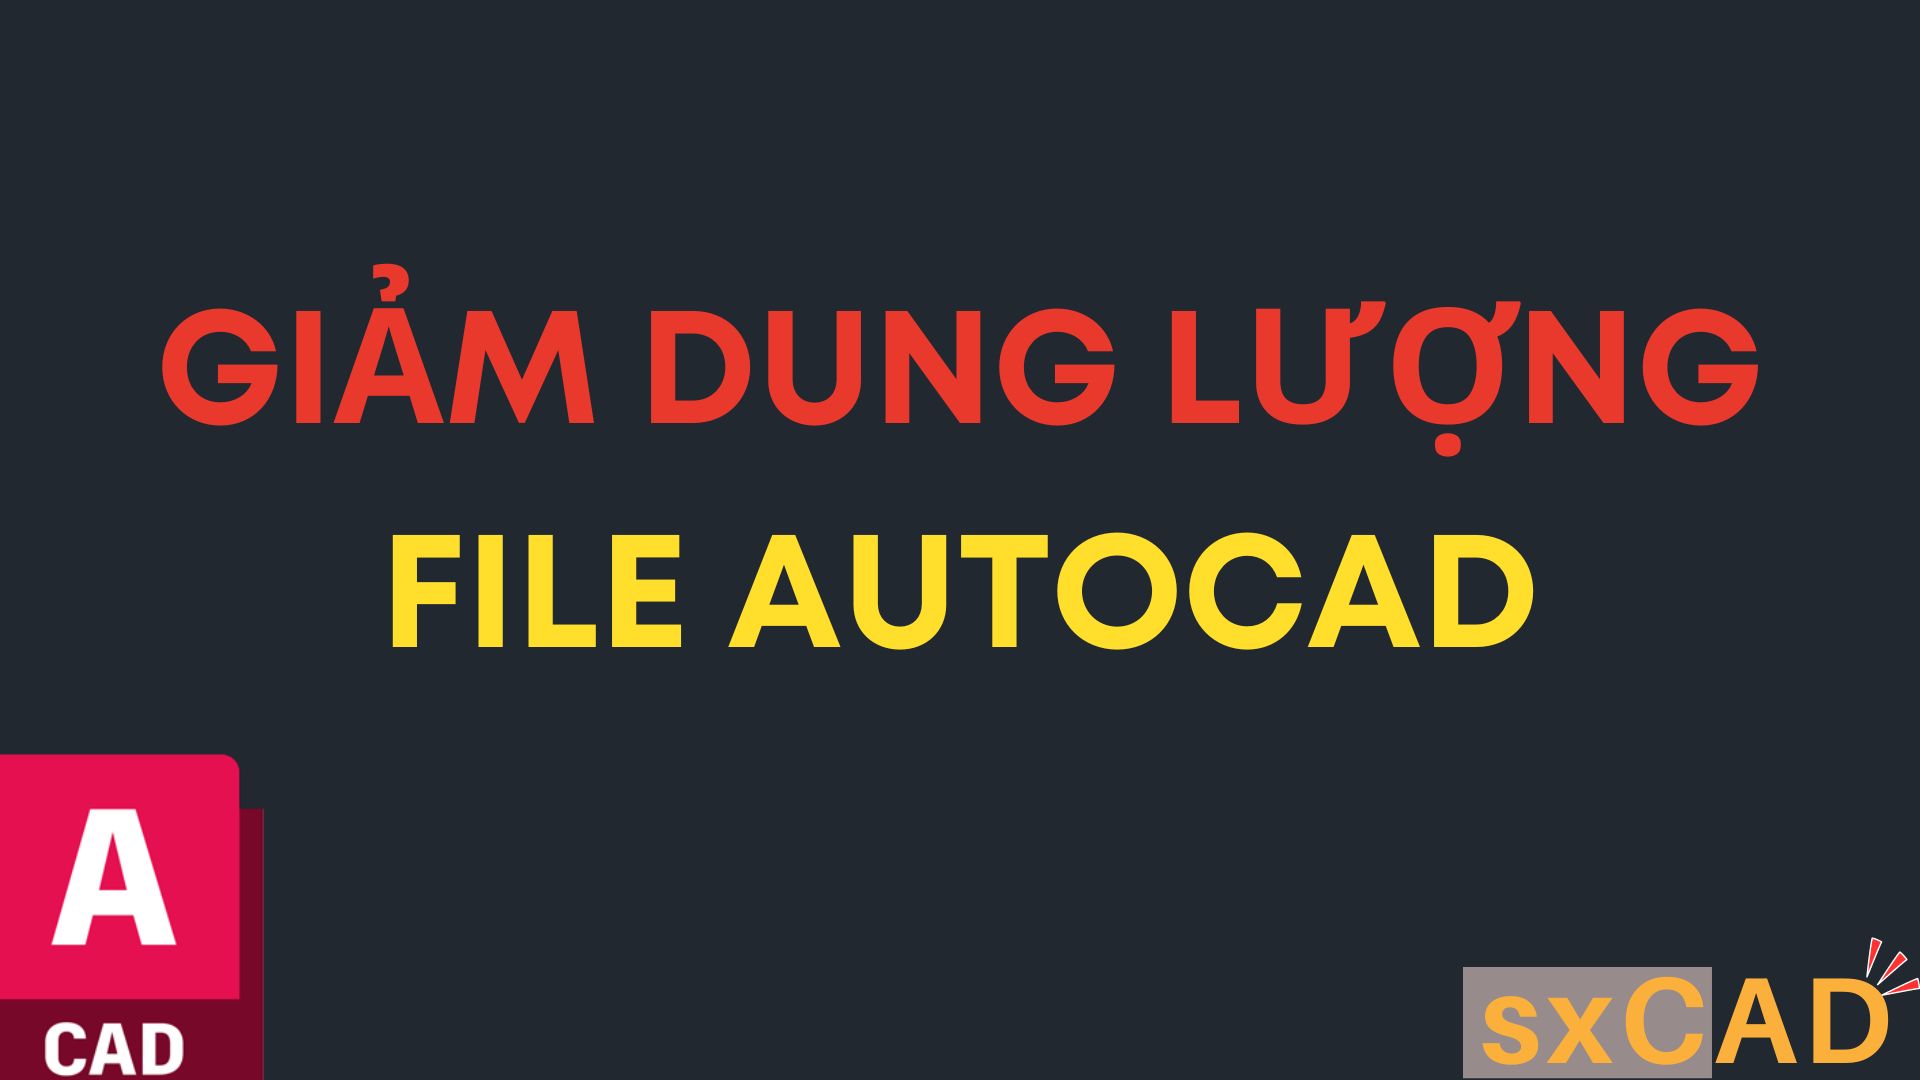 Giảm dung lượng file và trị bệnh giật lag bản vẽ AutoCAD